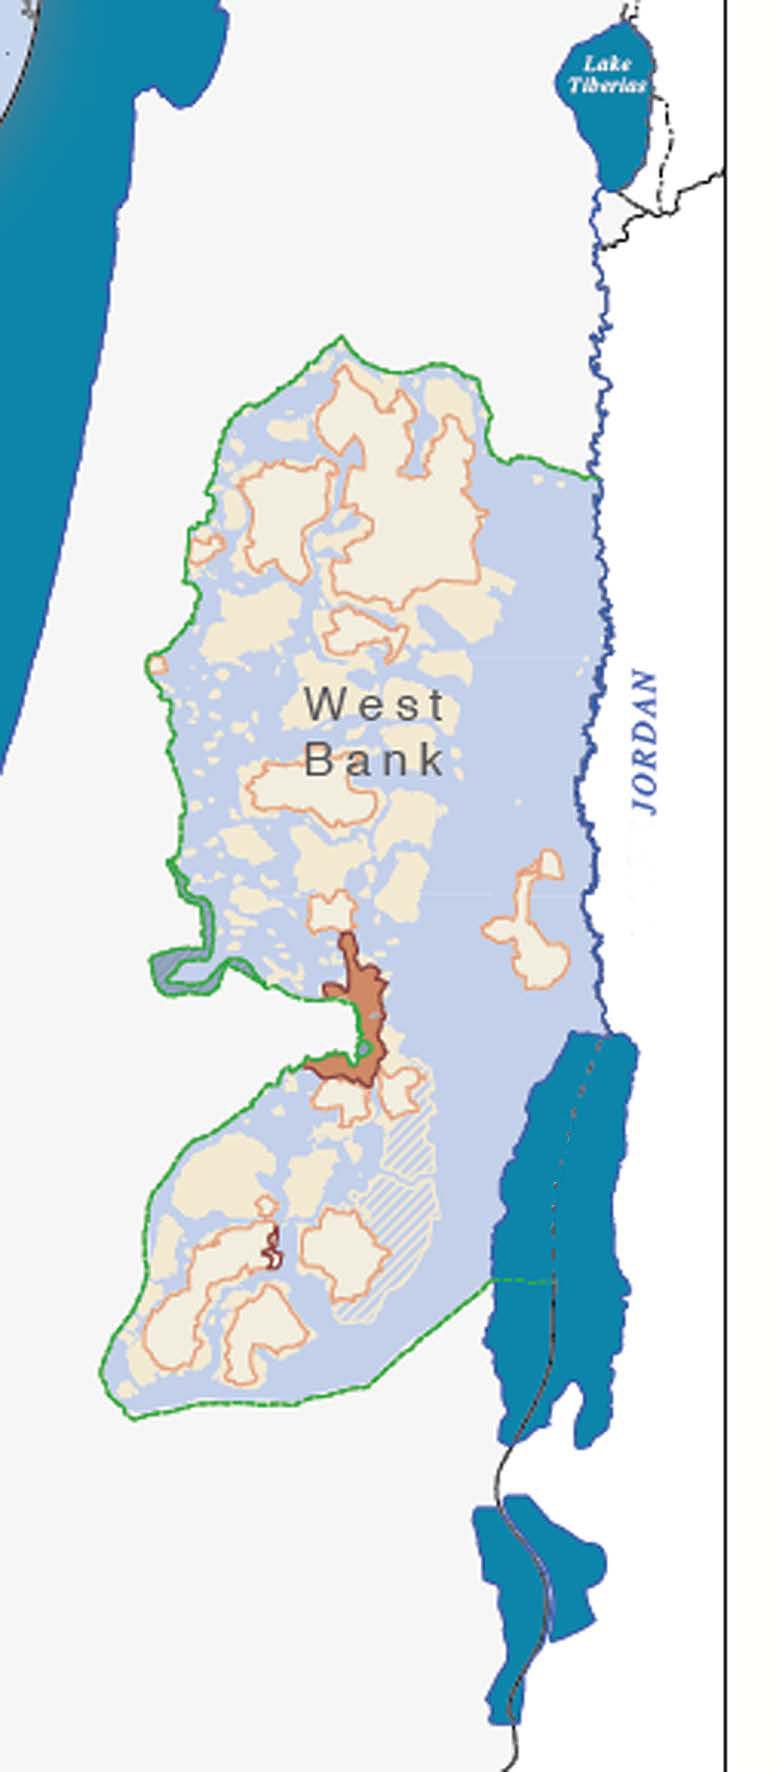 Interimsabkommen (Zwischenabkommen) über das Westjordanland und den Gazastreifen ersetzte frühere Vereinbarungen zwischen Israel und der PLO. Am 28.